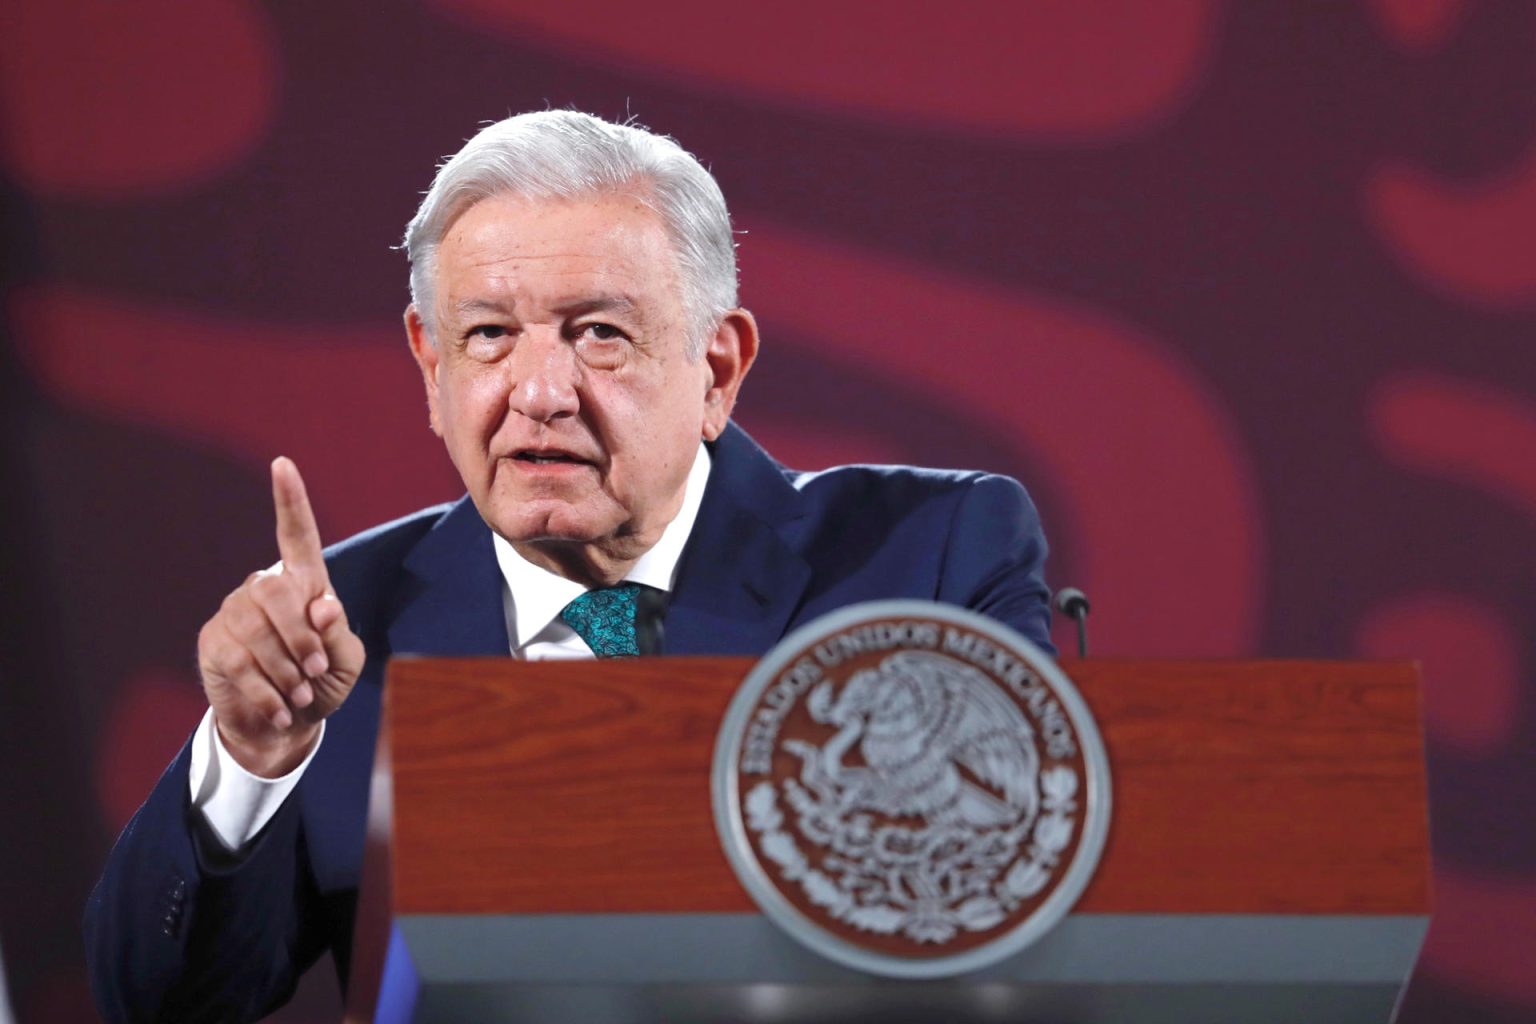 El Presidente de México Andrés Manuel López Obrador, participa este miércoles durante una rueda de prensa matutina en Palacio Nacional en la Ciudad de México (México). EFE/Sáshenka Gutiérrez